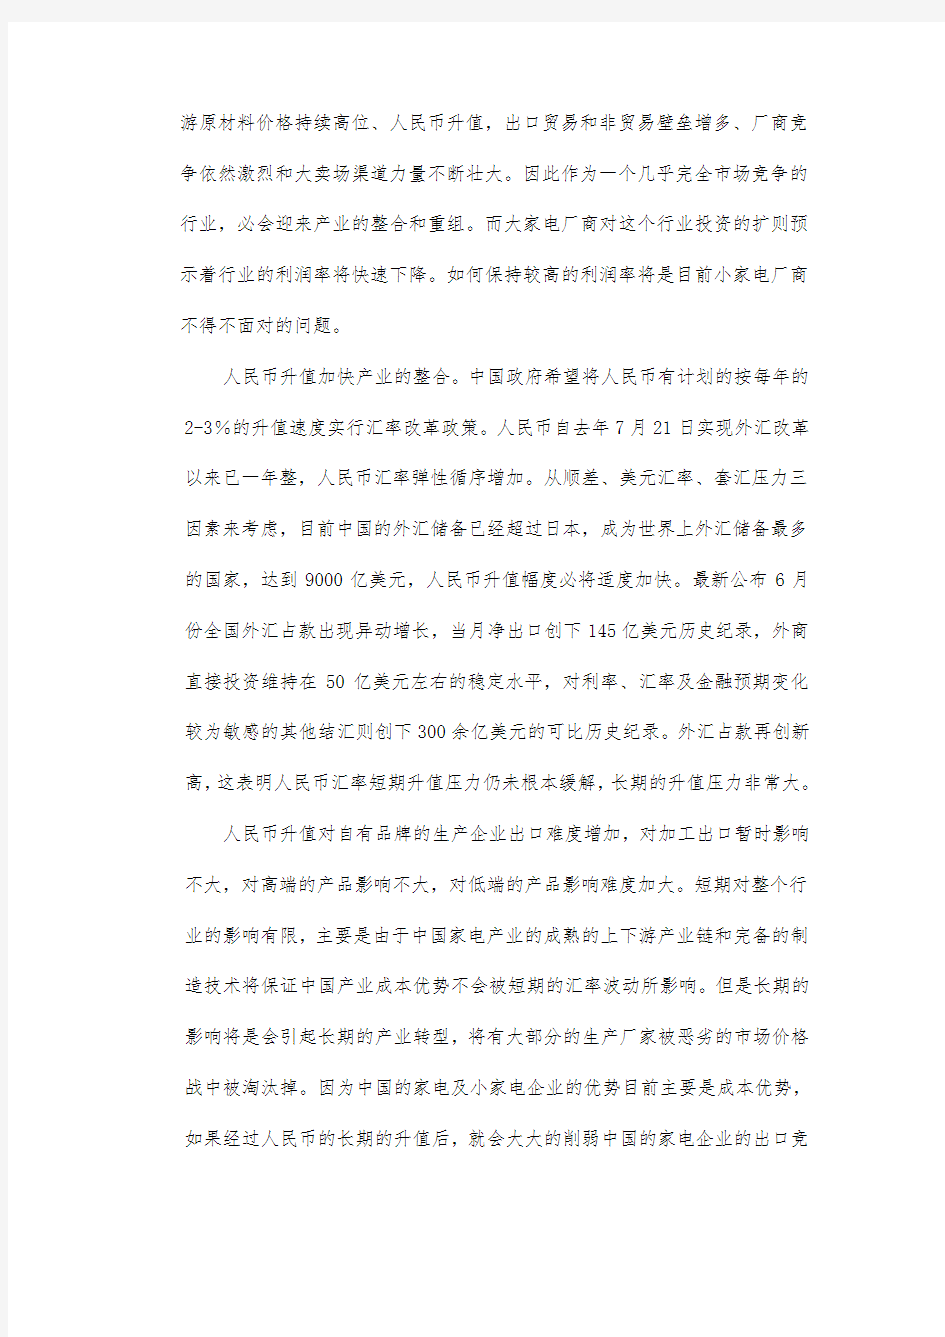 中国吸尘器行业分析报告文案